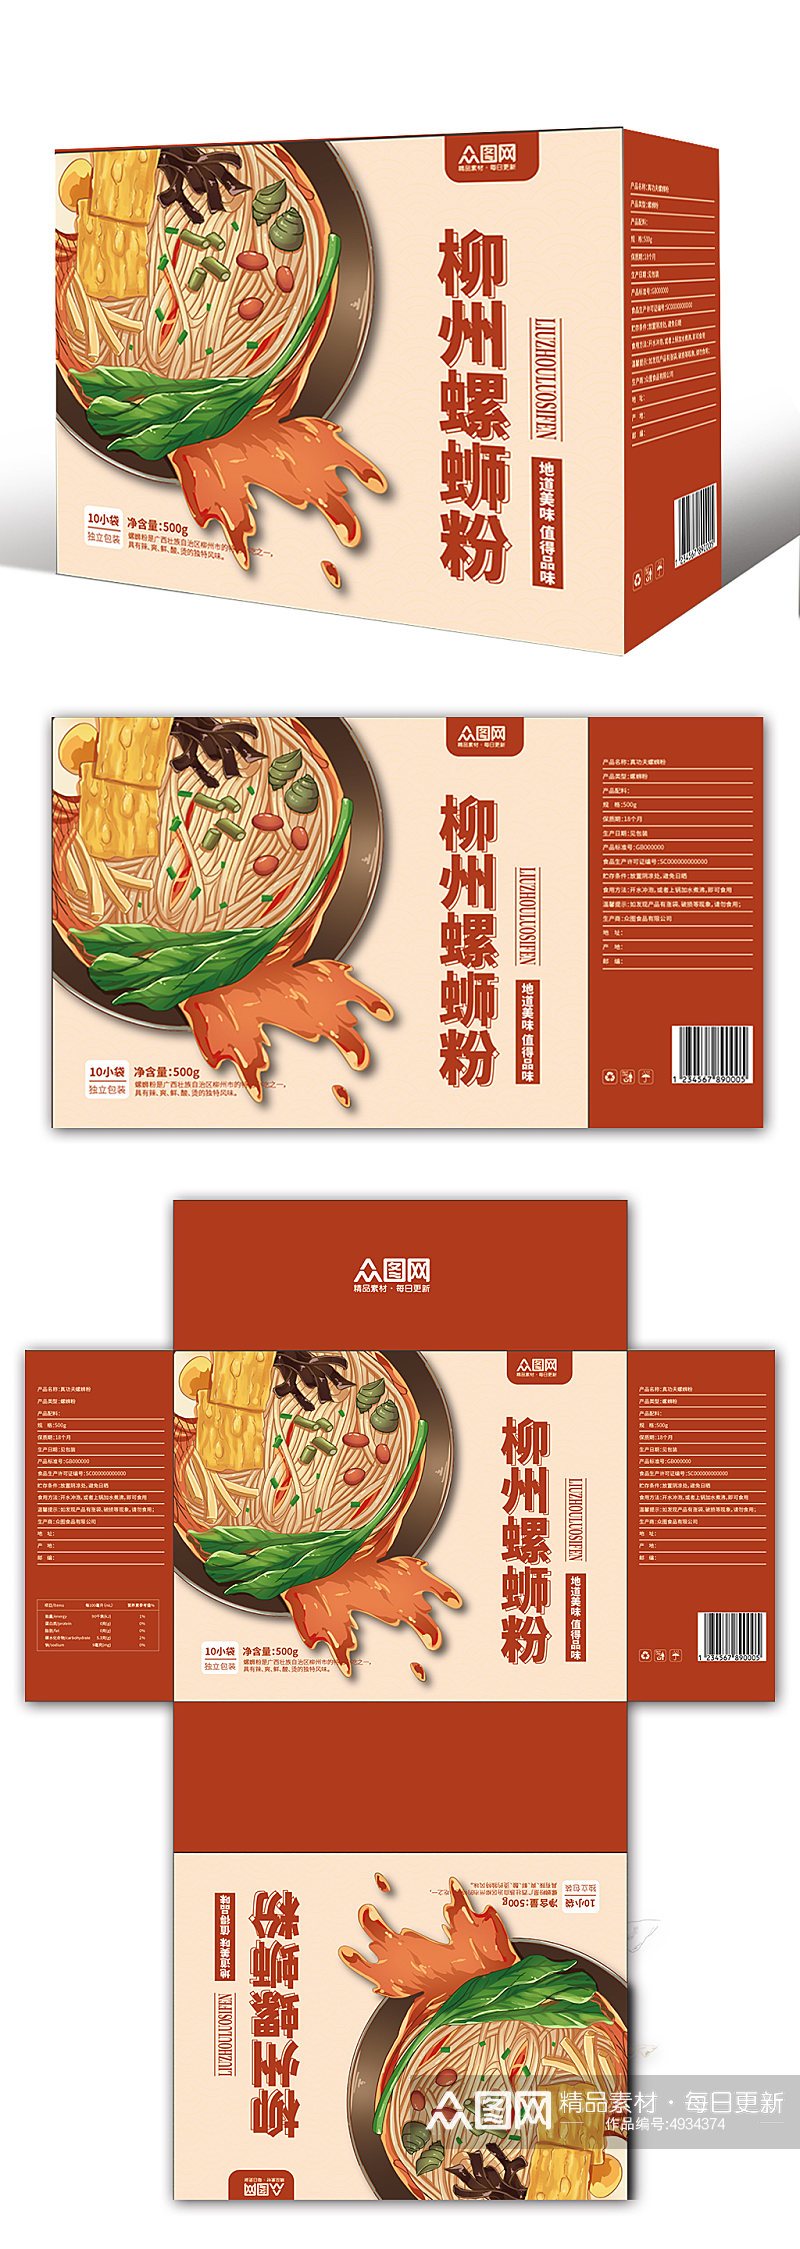 柳州螺蛳粉米粉美食手提袋礼盒包装设计素材